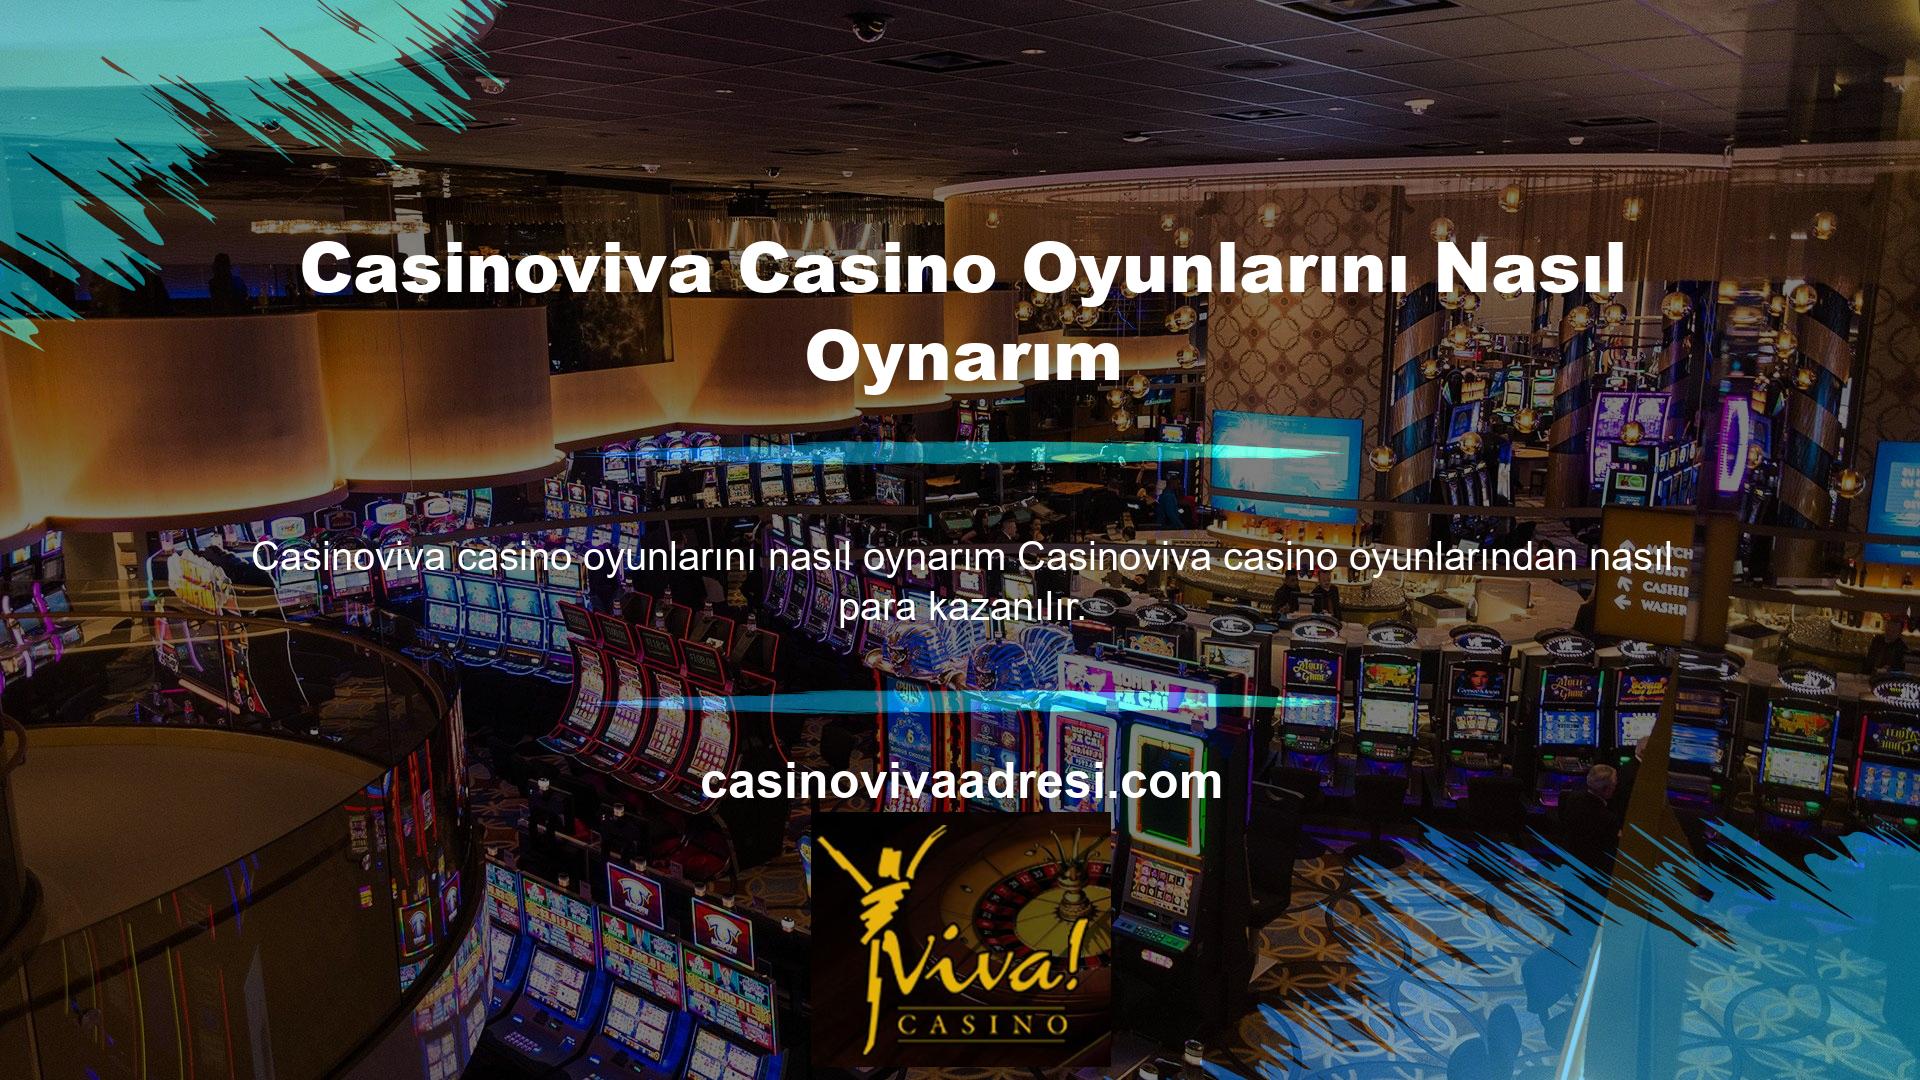 Bu casino bölümünün müşterilerine sunduğu oyun seçeneklerini kullanmak için öncelikle Kayıt sekmesine tıklamanız gerekmektedir